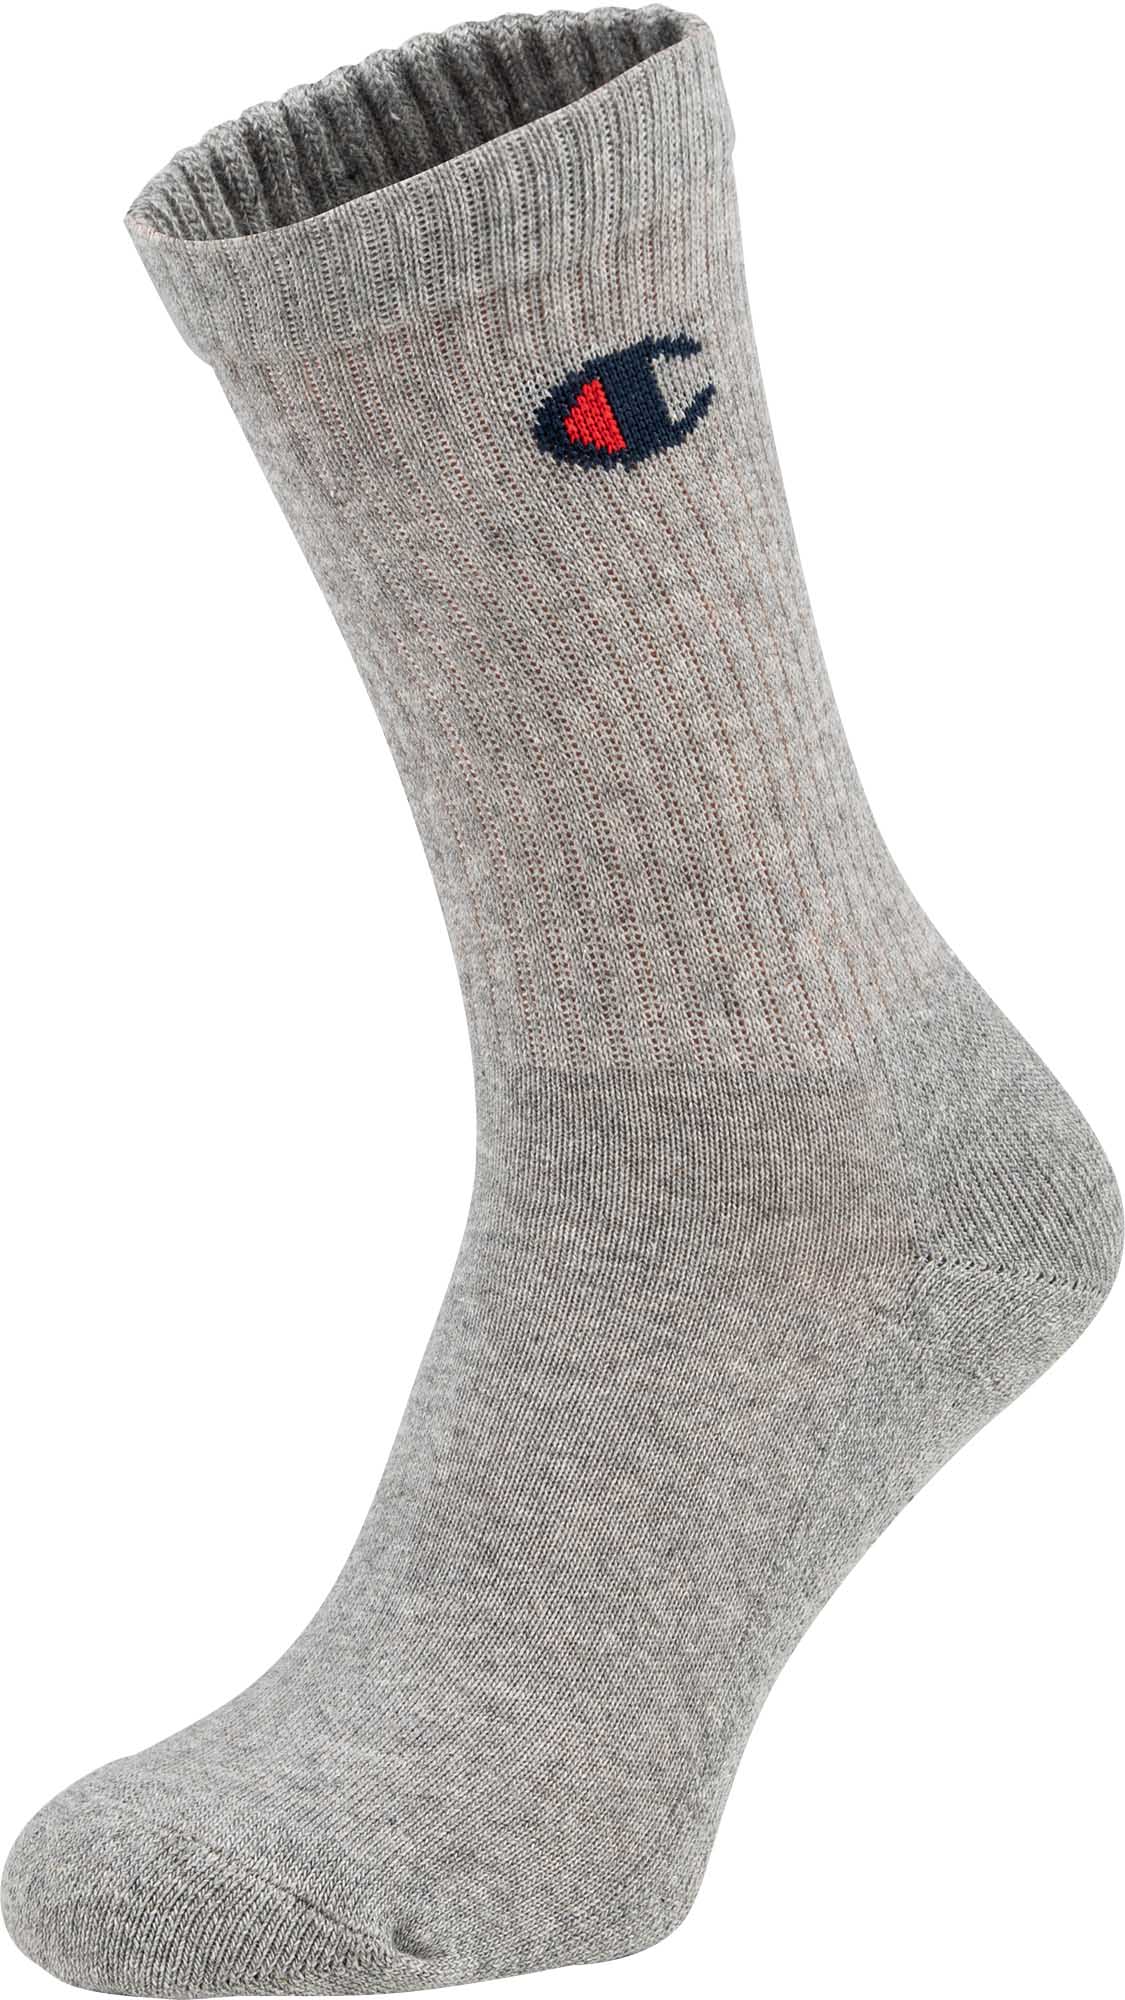 Унисекс чорапи